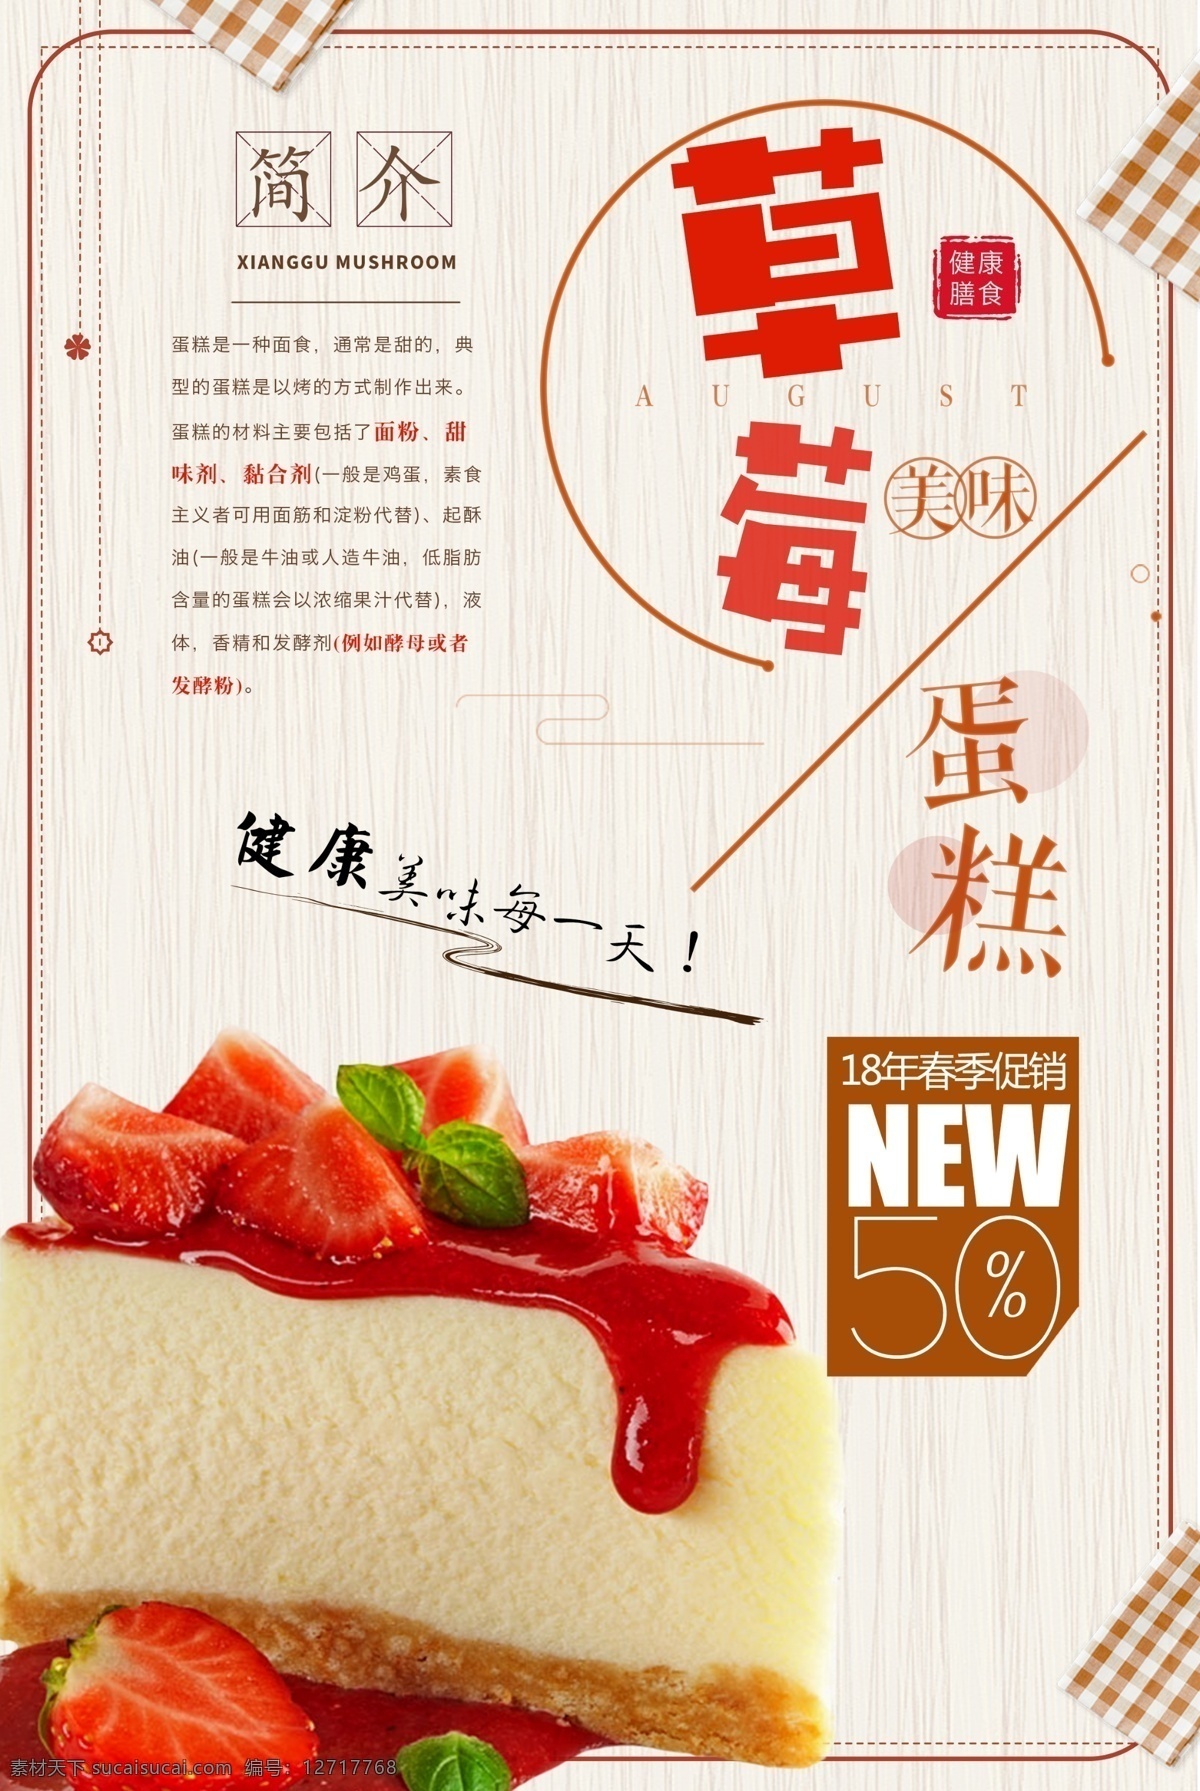 新品 鲜奶 草莓 蛋糕 蛋糕海报设计 上市 海报 草莓蛋糕